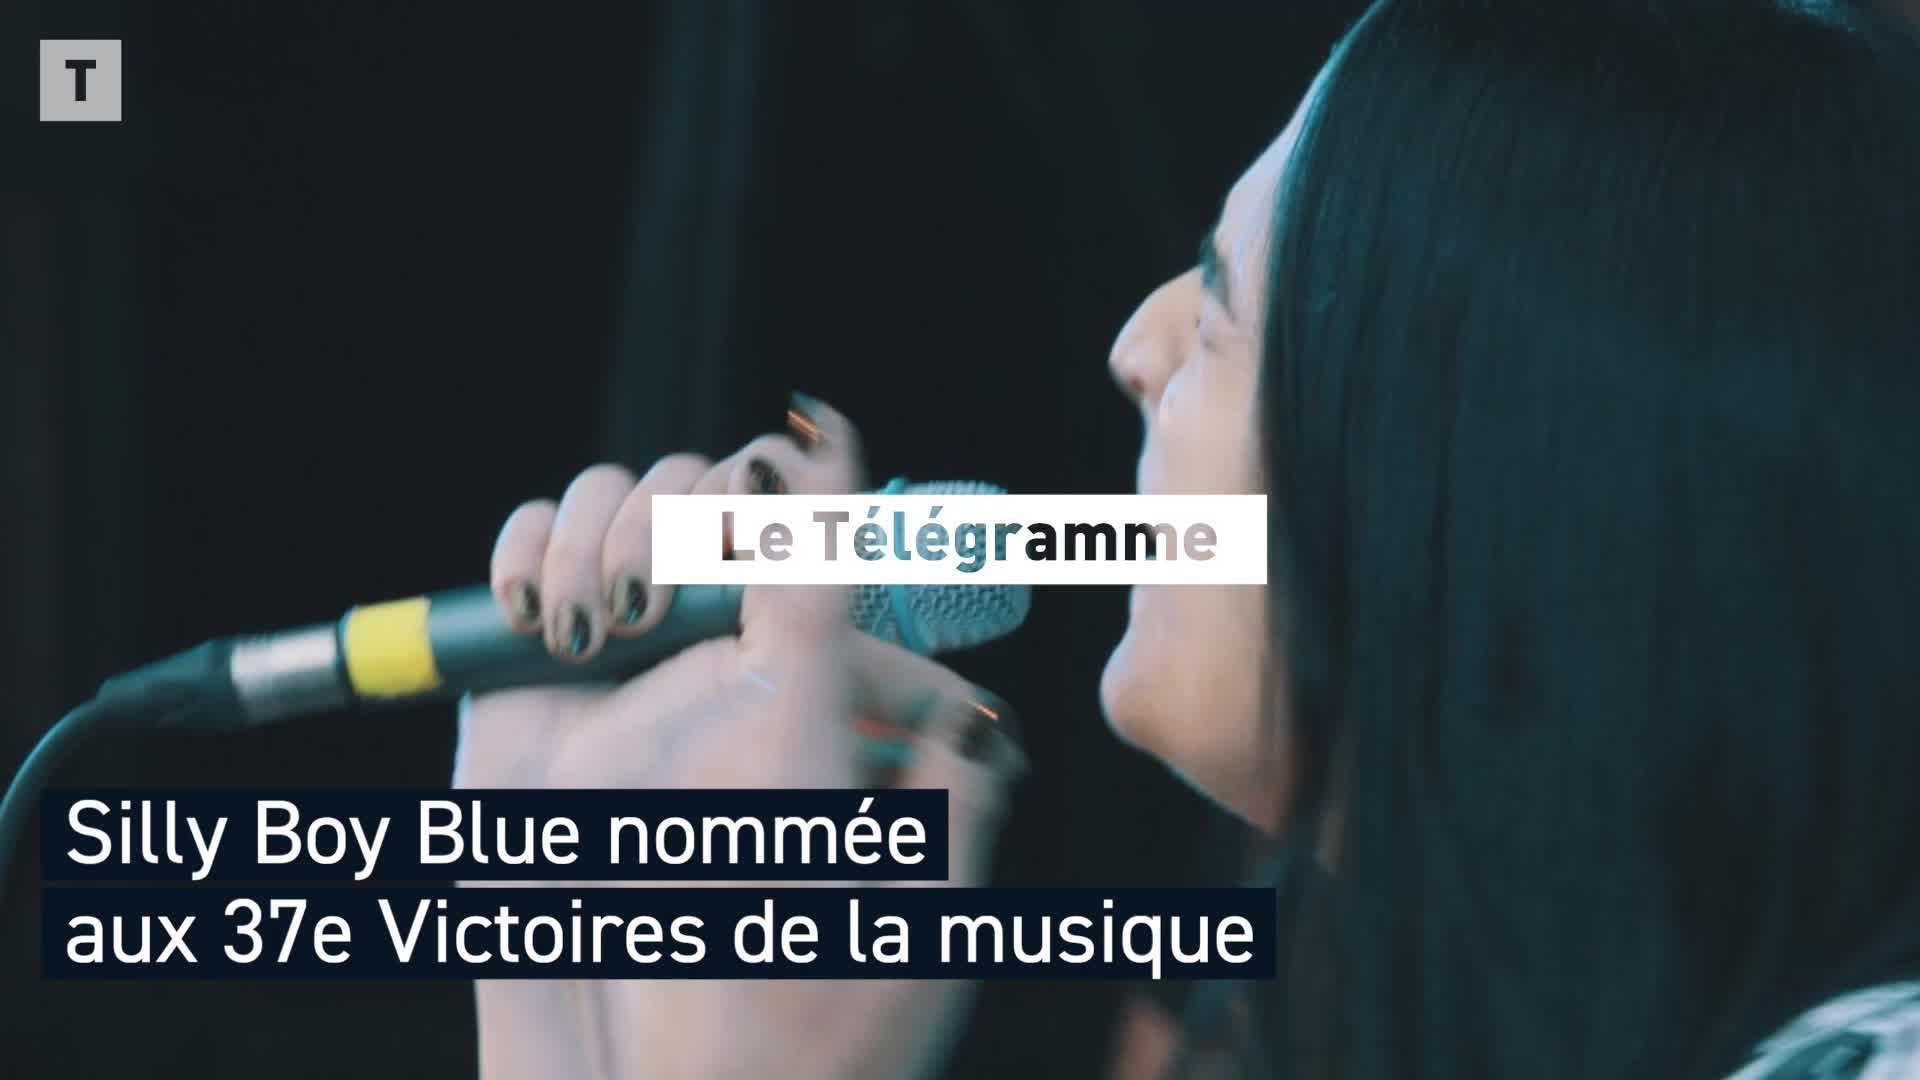 Silly Boy Blue, la Nantaise nominée aux Victoires de la musique (Le Télégramme)